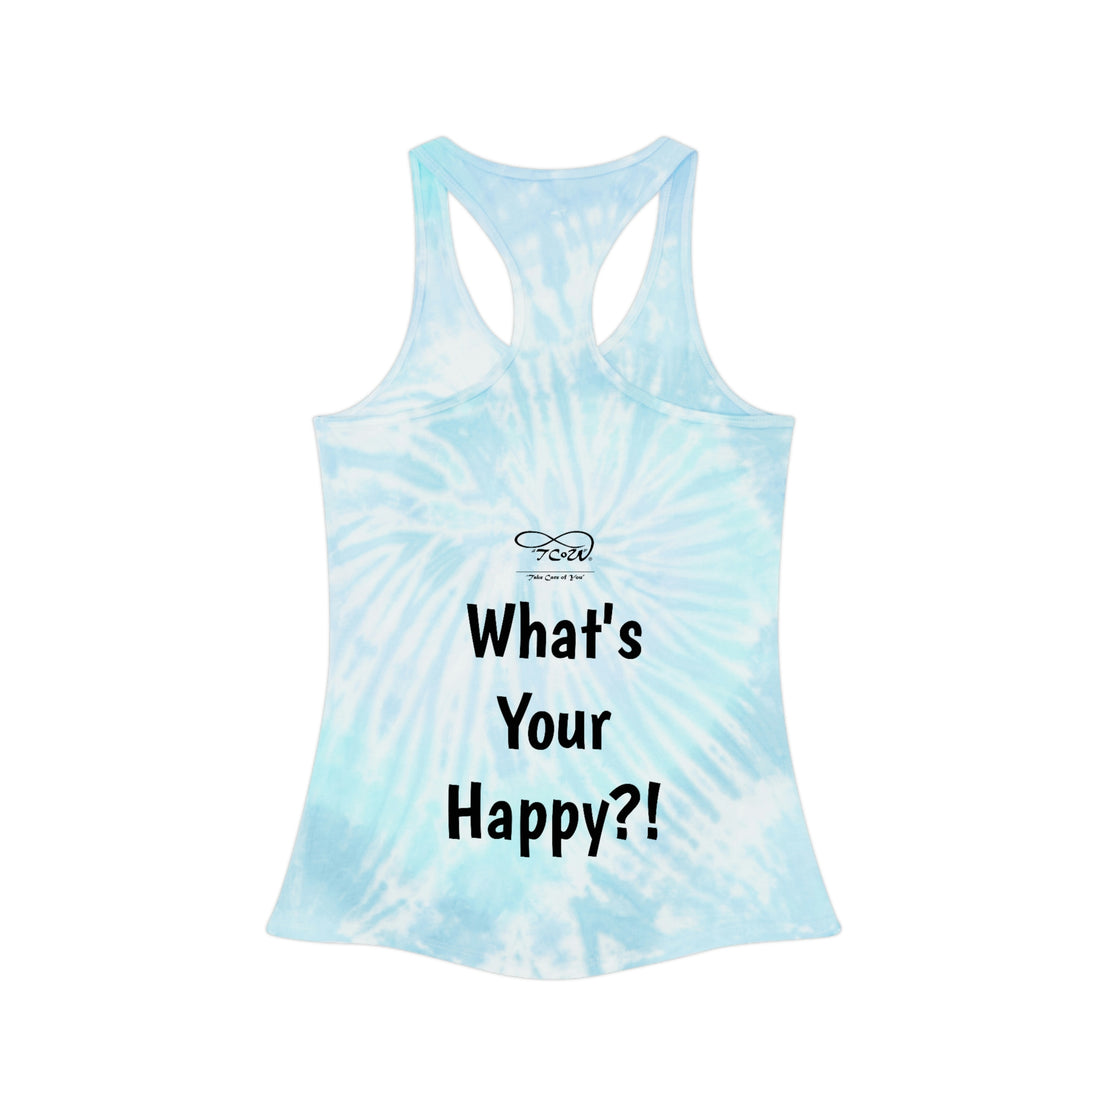 What's Your Happy?! "My Happy is Running! Tie Dye Racerback Tank Top